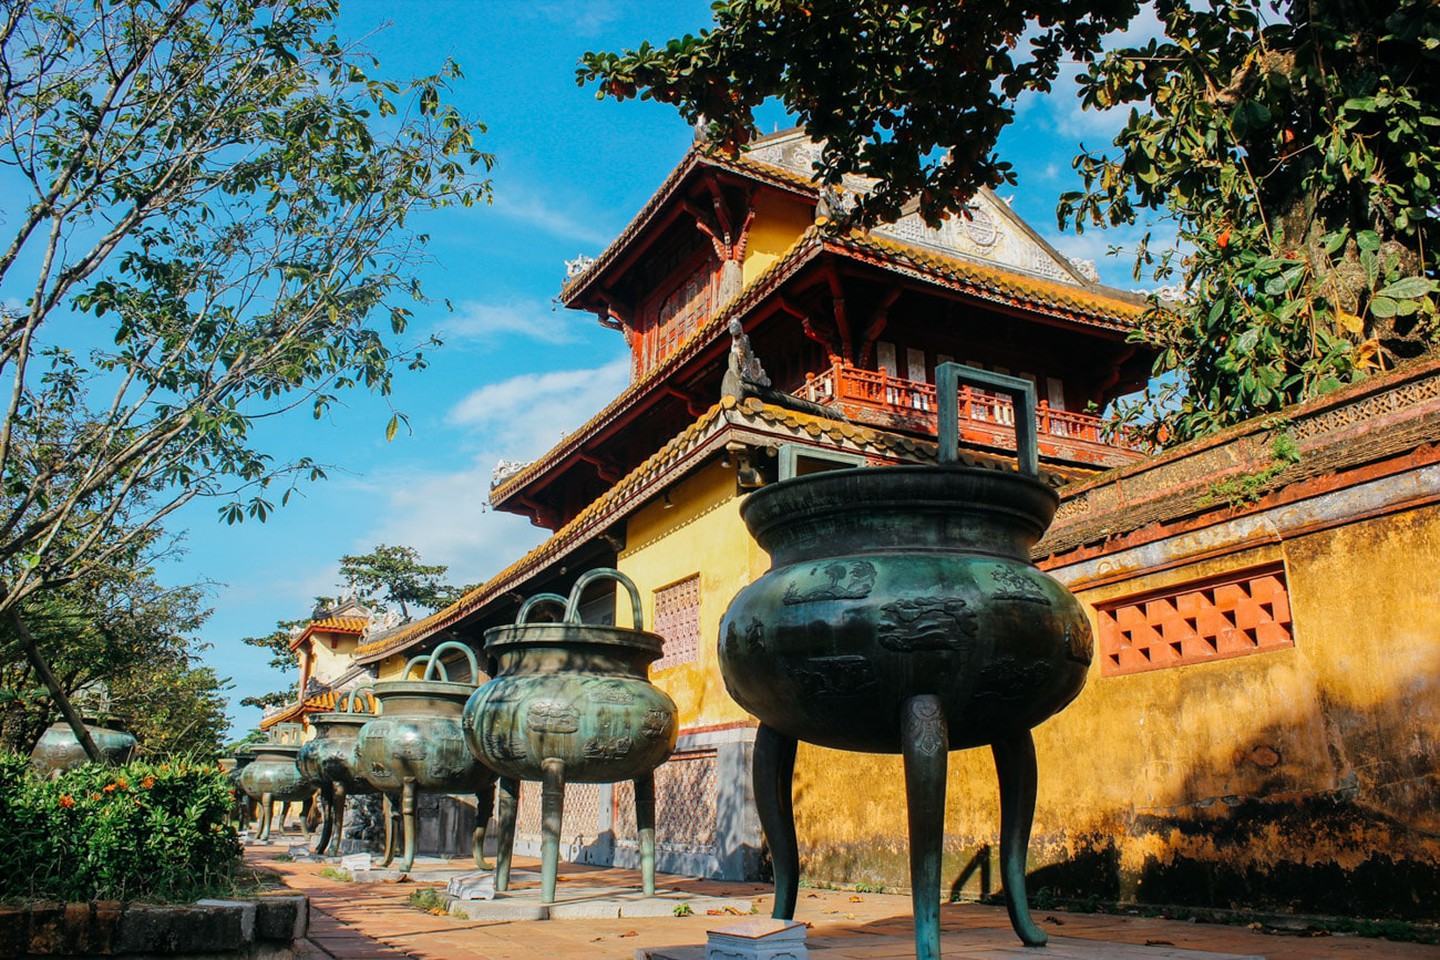 Báo Đức gọi các địa danh nổi tiếng của Việt Nam là "những điểm đến trong mơ" - 6